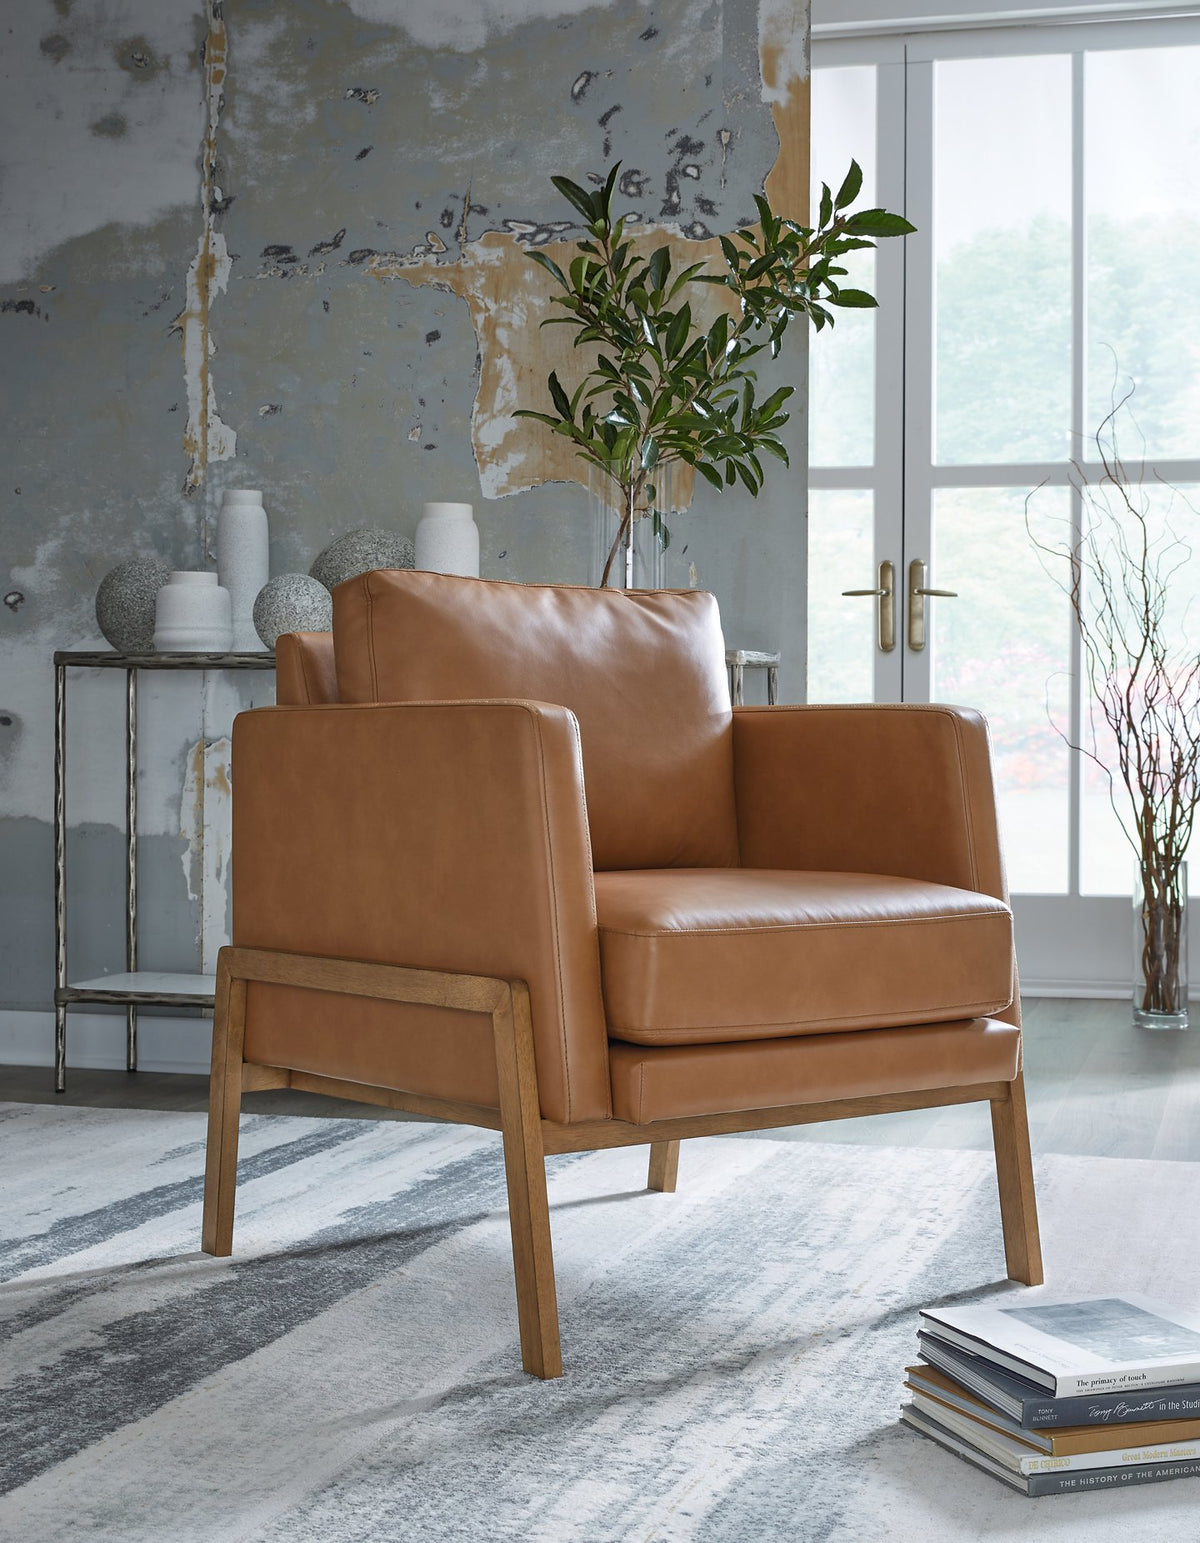 Numund Accent Chair - Half Price Furniture